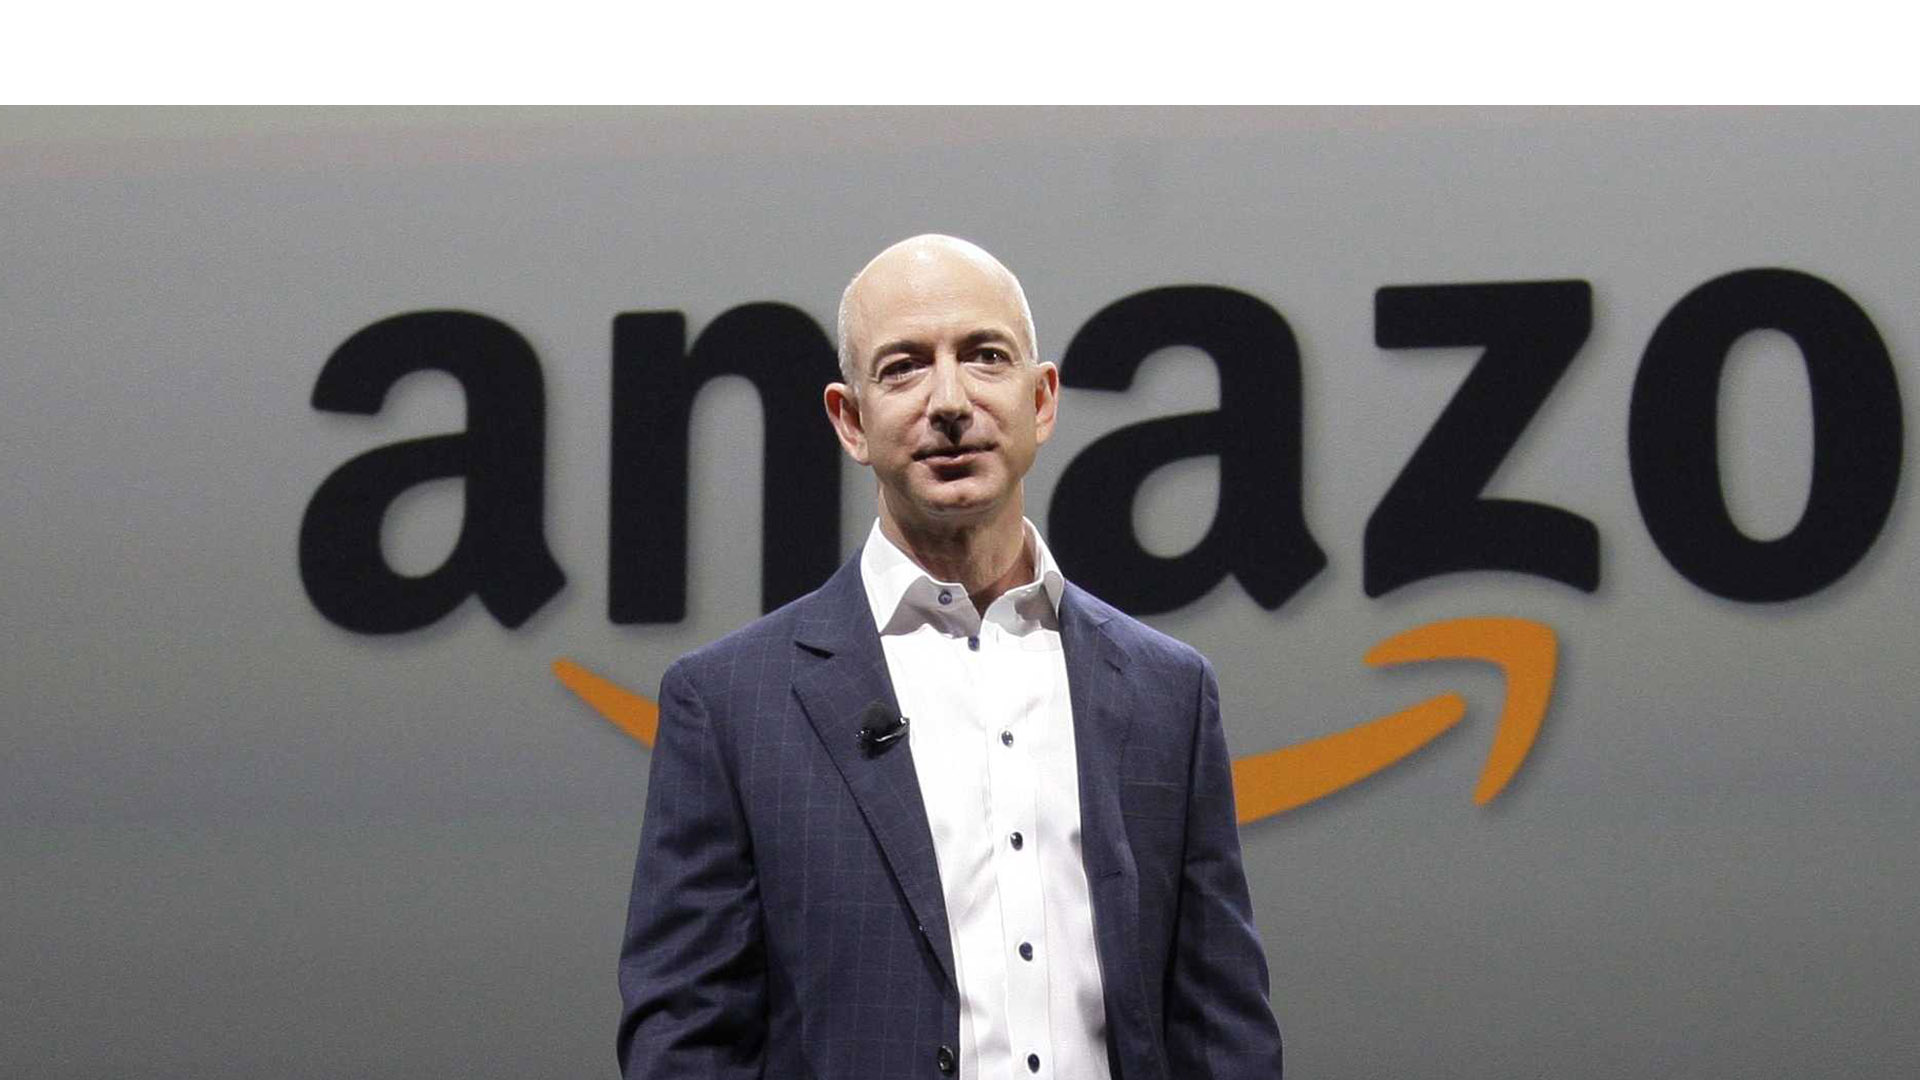 Jeff Bezos escaló al puesto número 4 de los multimillonarios del mundo